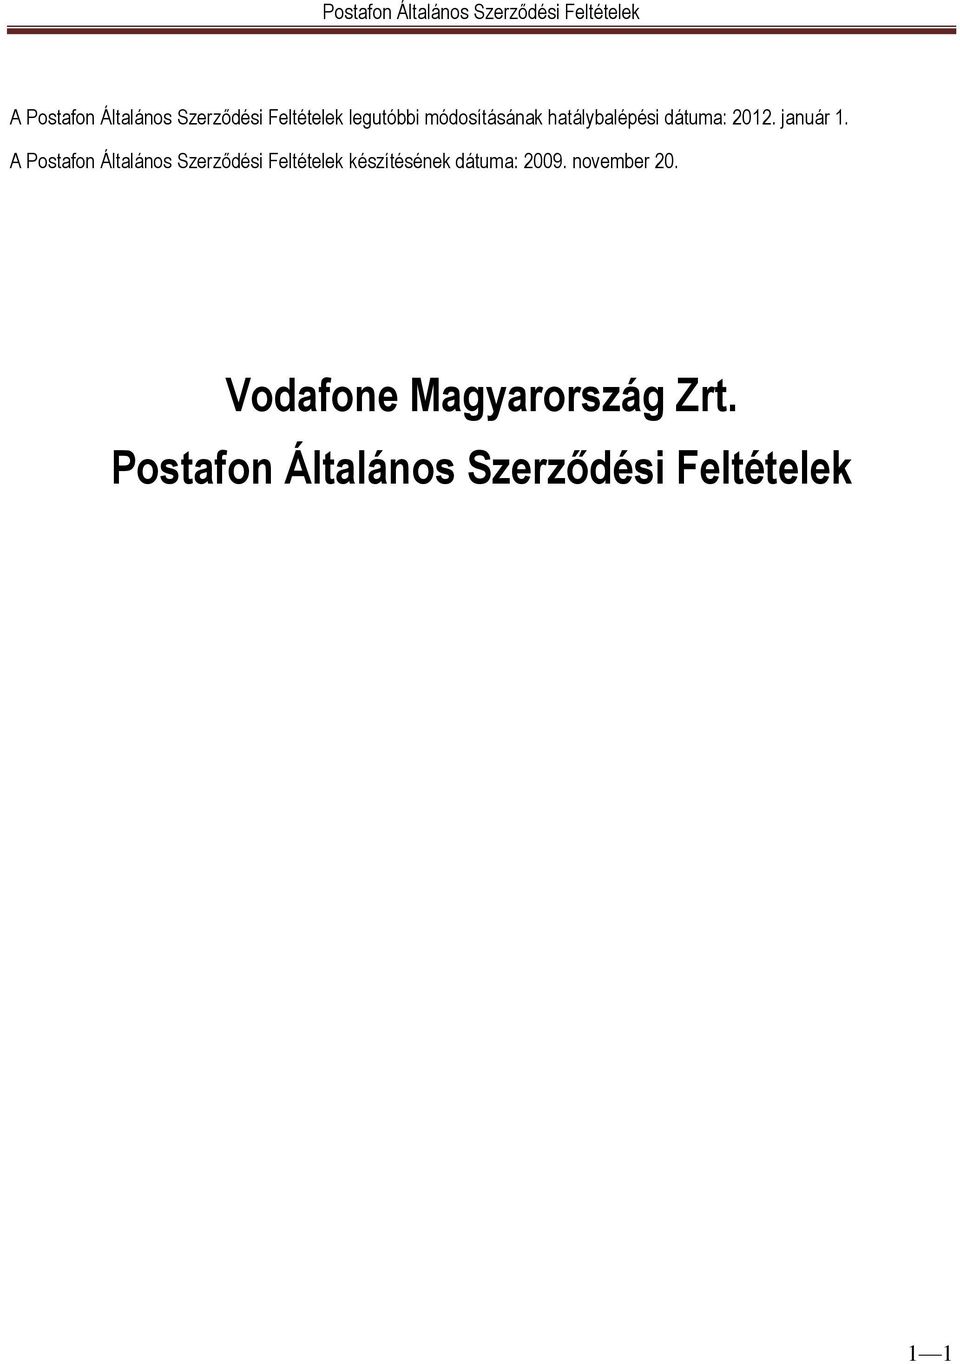 A Postafon Általános Szerződési Feltételek készítésének dátuma: 2009.